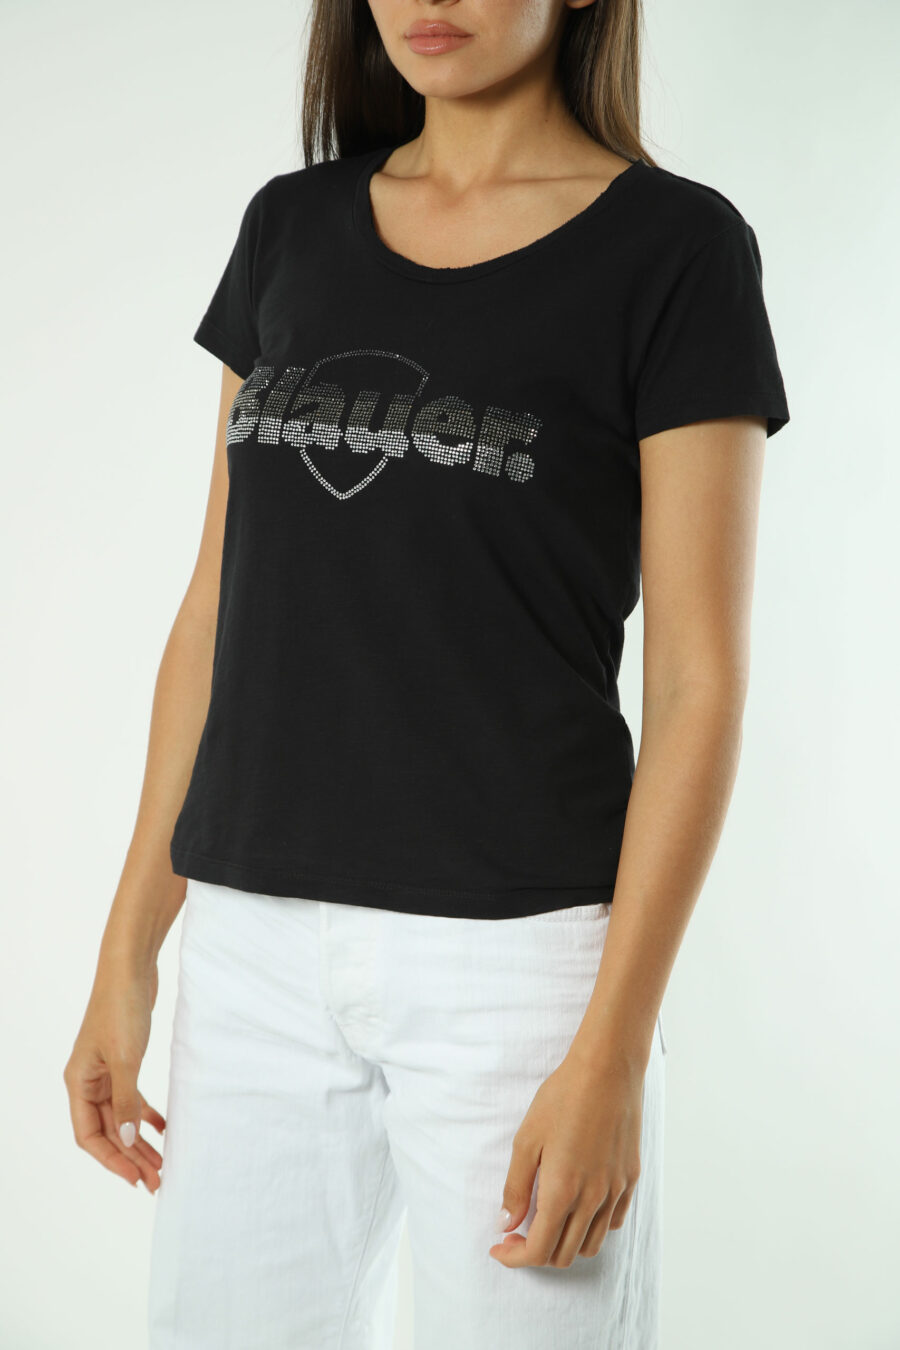 T-shirt preta com maxilogo bordado a strass - Fotos 1597